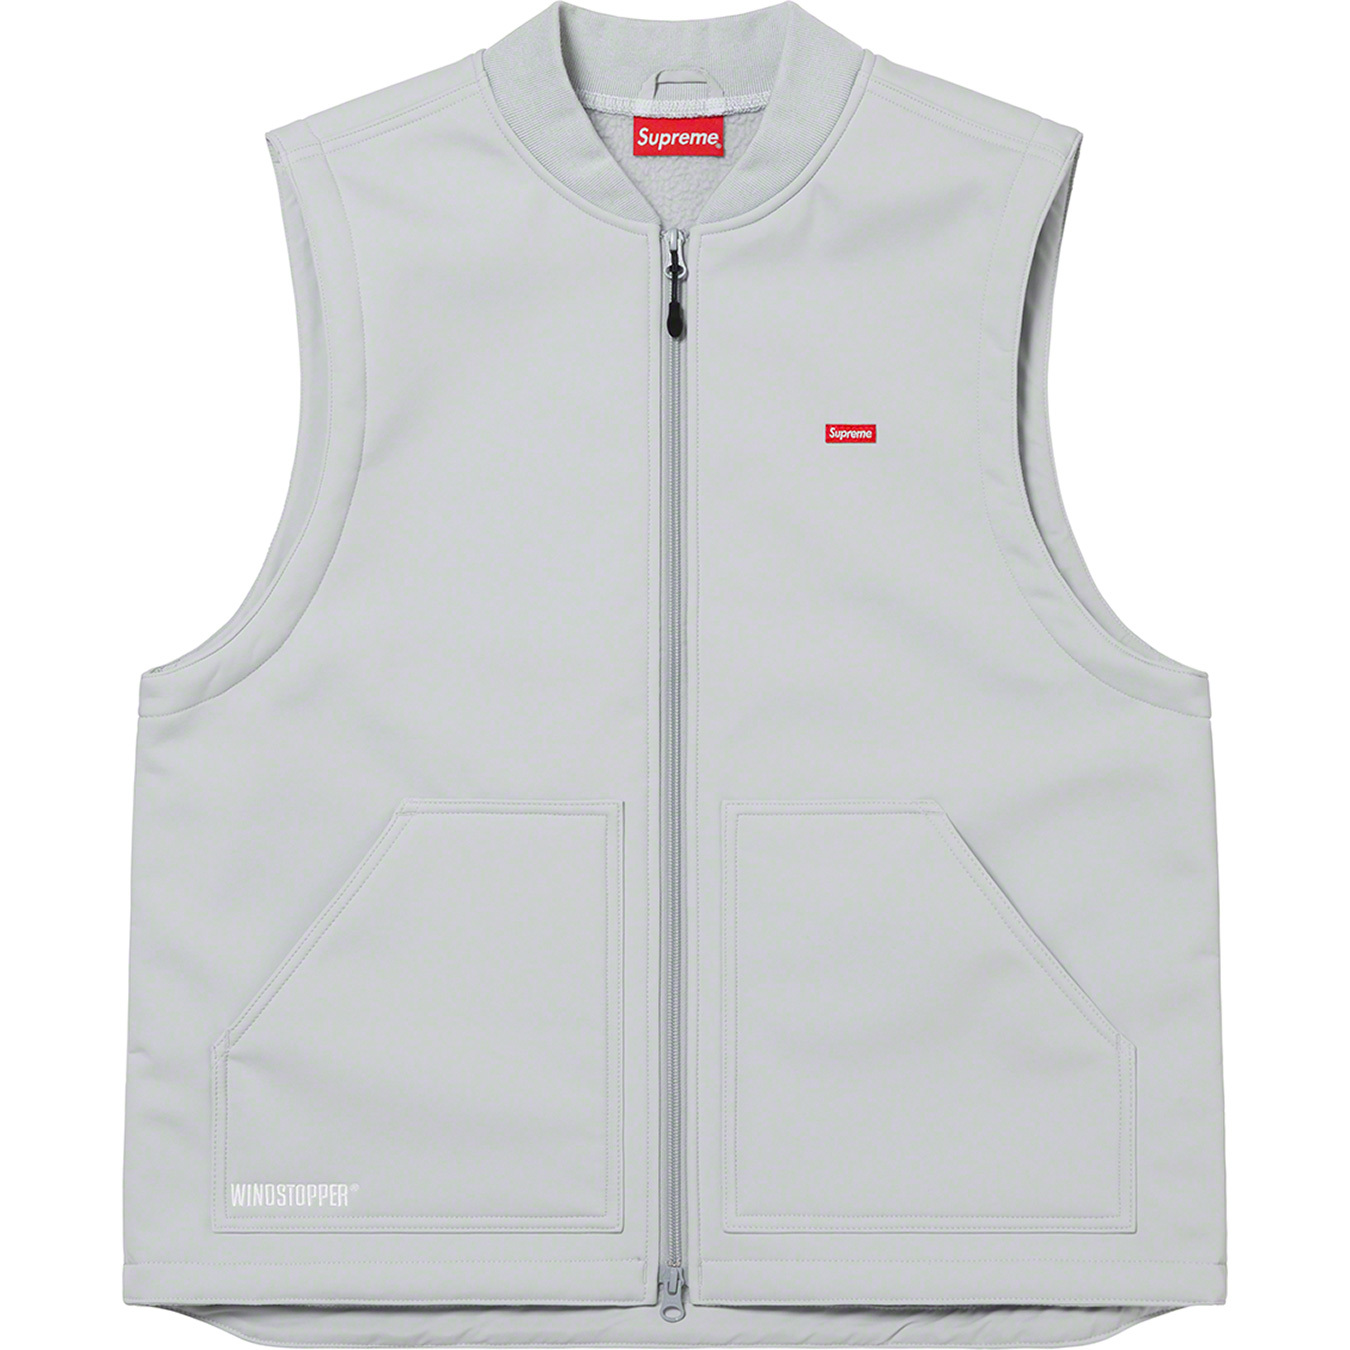 WINDSTOPPER® Work Vest | Supreme 22fw